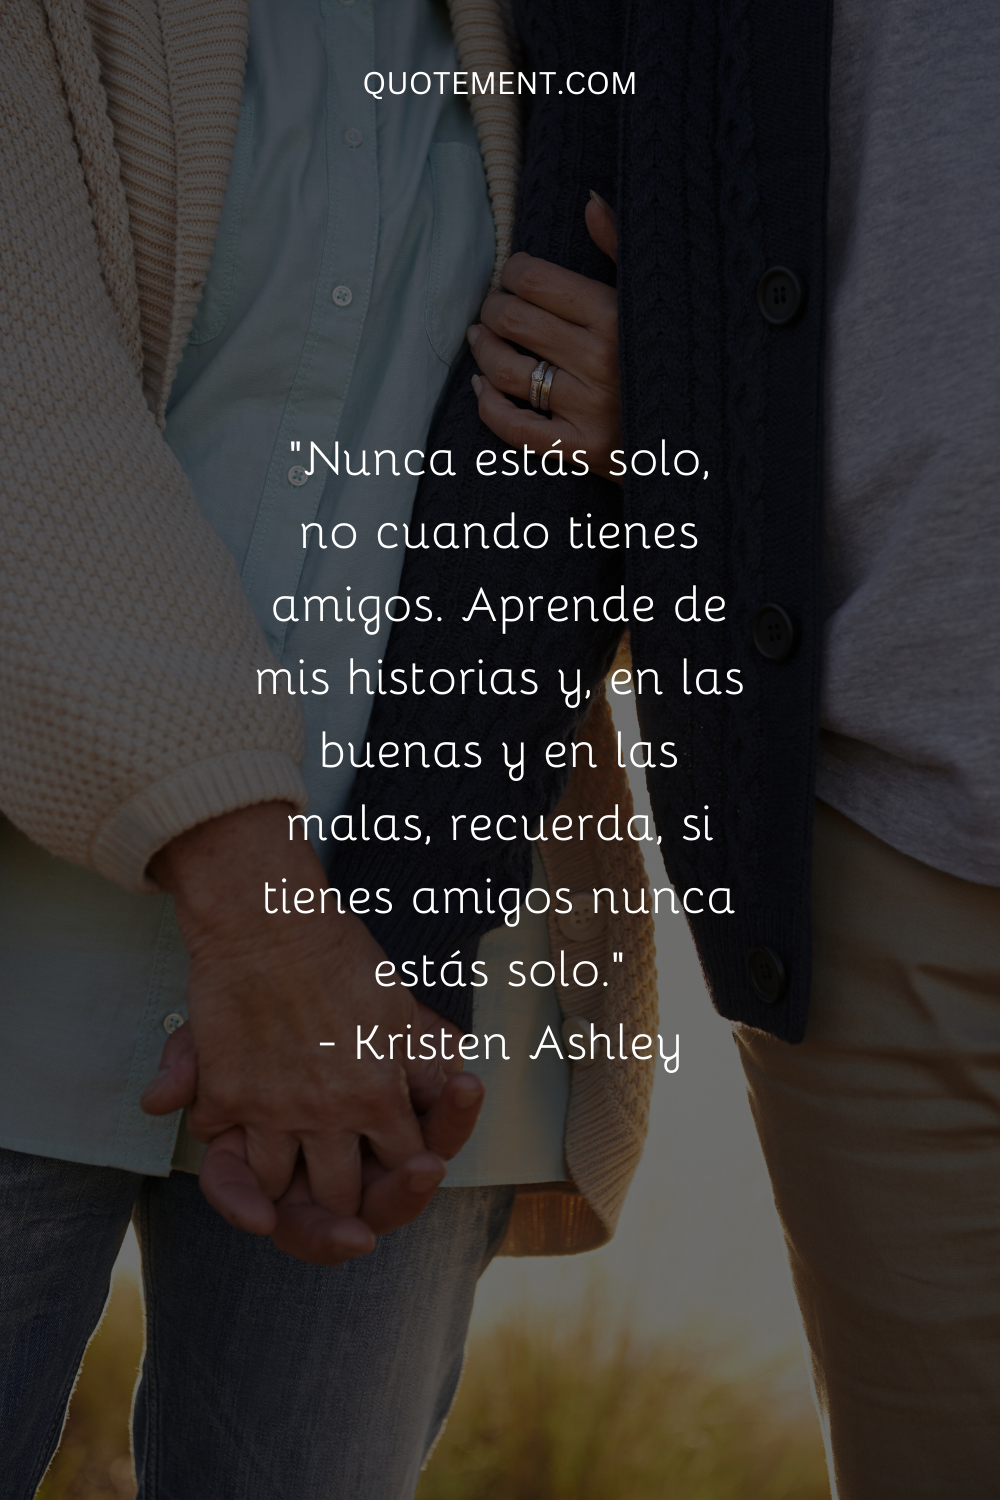 "Nunca estás solo, no cuando tienes amigos. Aprende de mis historias y, en las buenas y en las malas, recuerda que si tienes amigos nunca estás solo." - Kristen Ashley